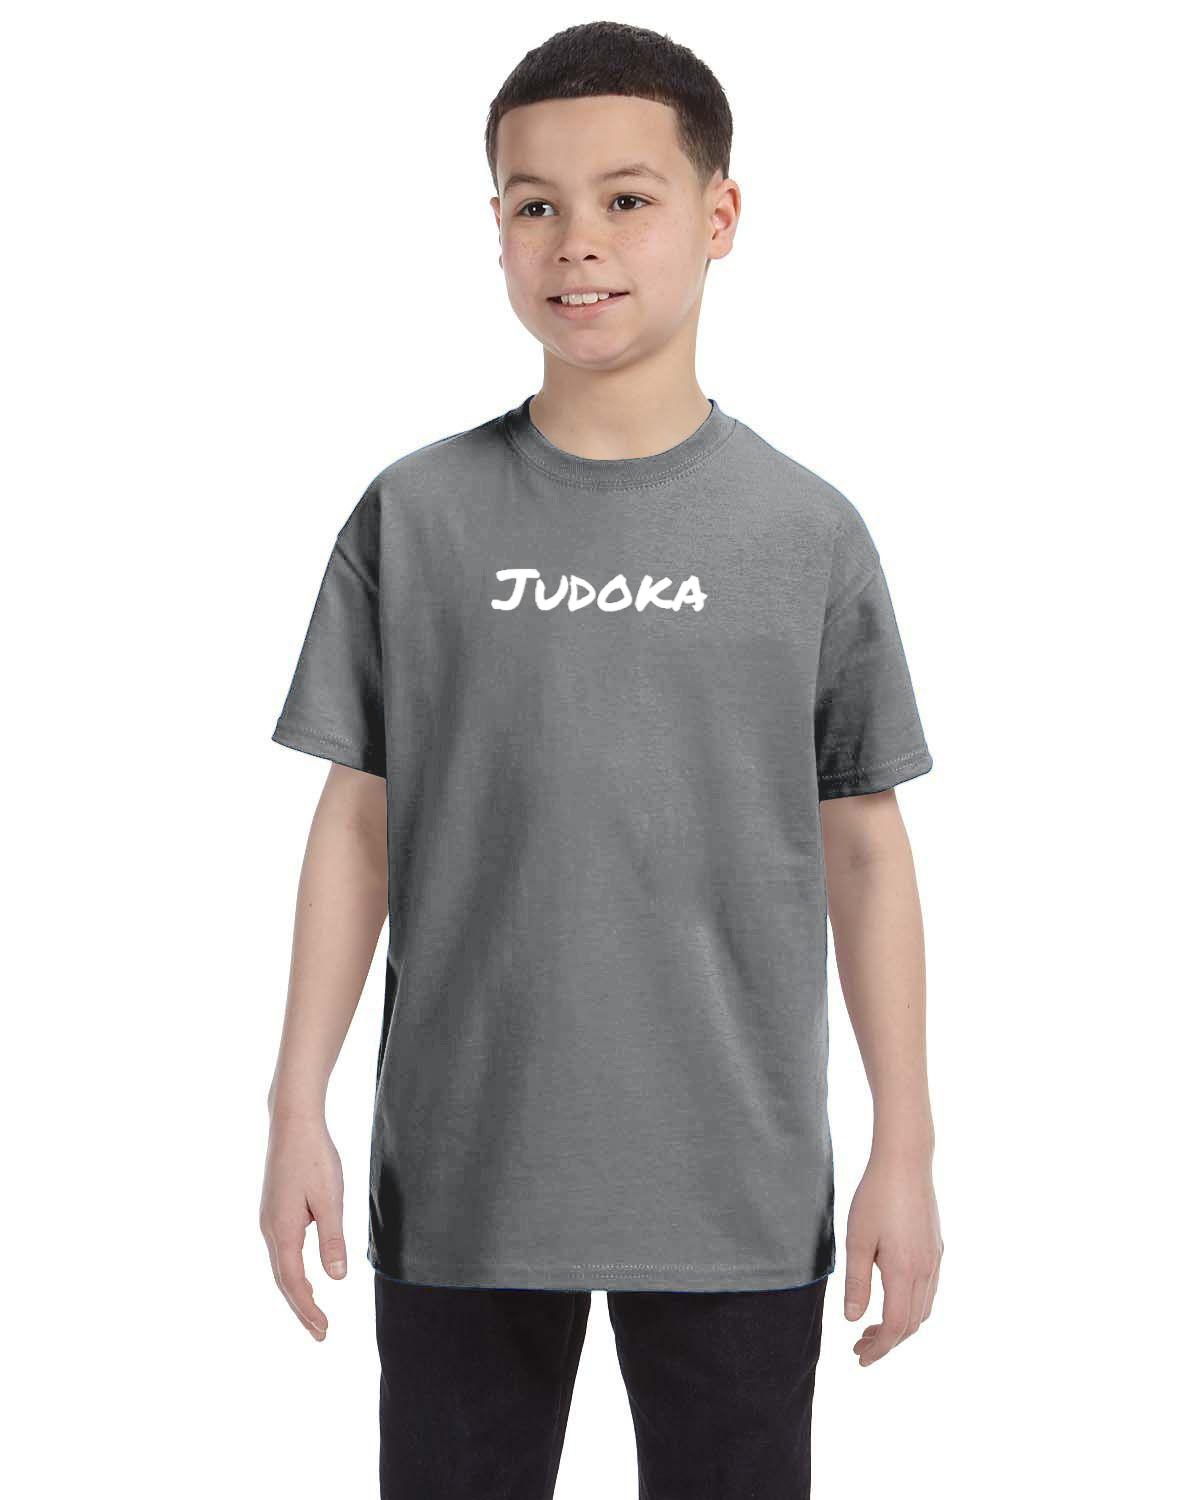 Judoka Kids T-Shirt